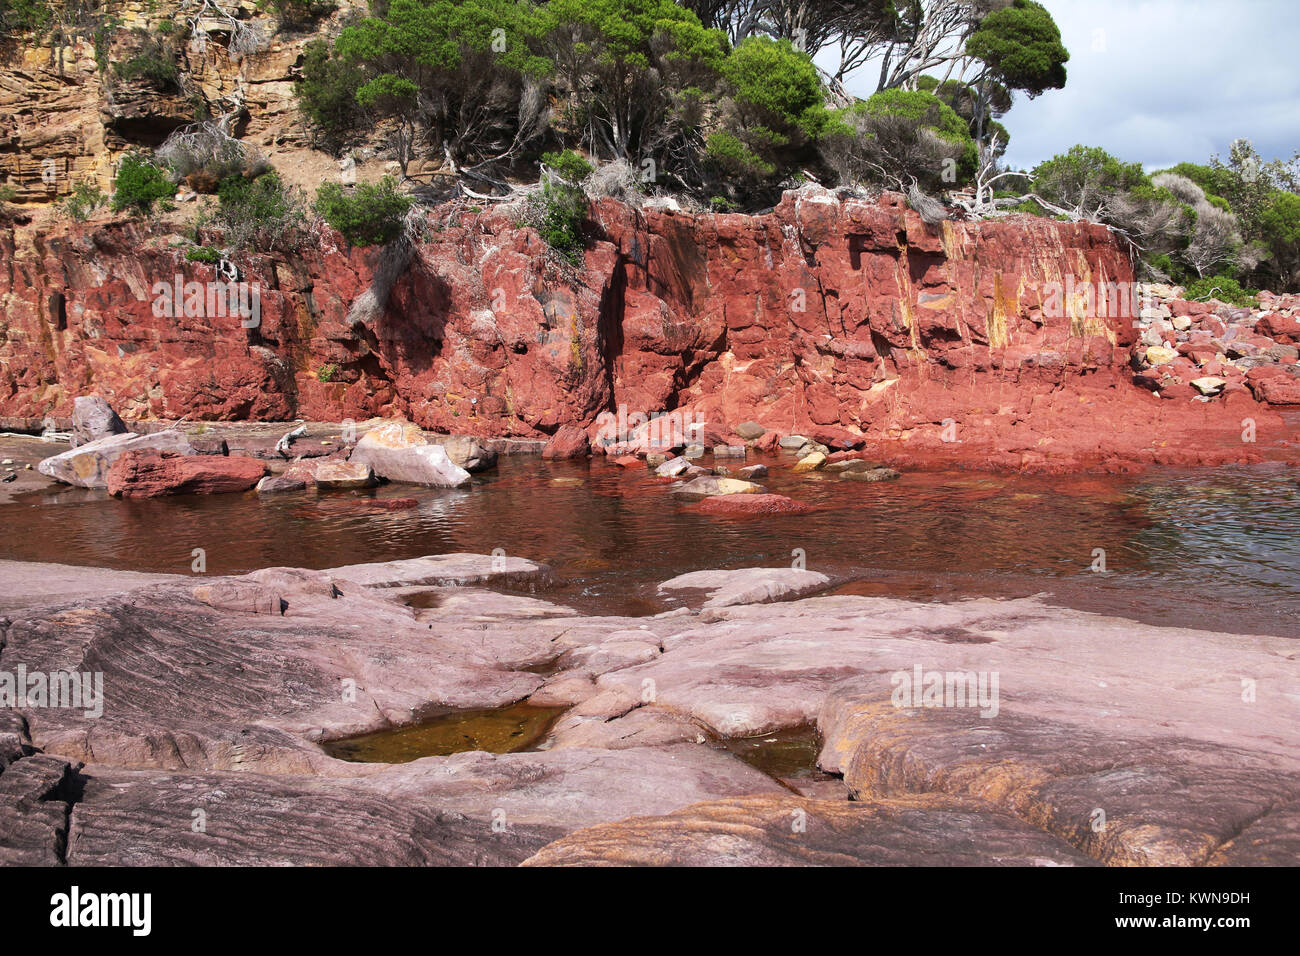 Rosso antico forme di roccia scogliera vicino Bittangabee Bay in Ben Boyd National Park, Eden, NSW, Australia. Fotografia di viaggio, Australia regionale. Foto Stock